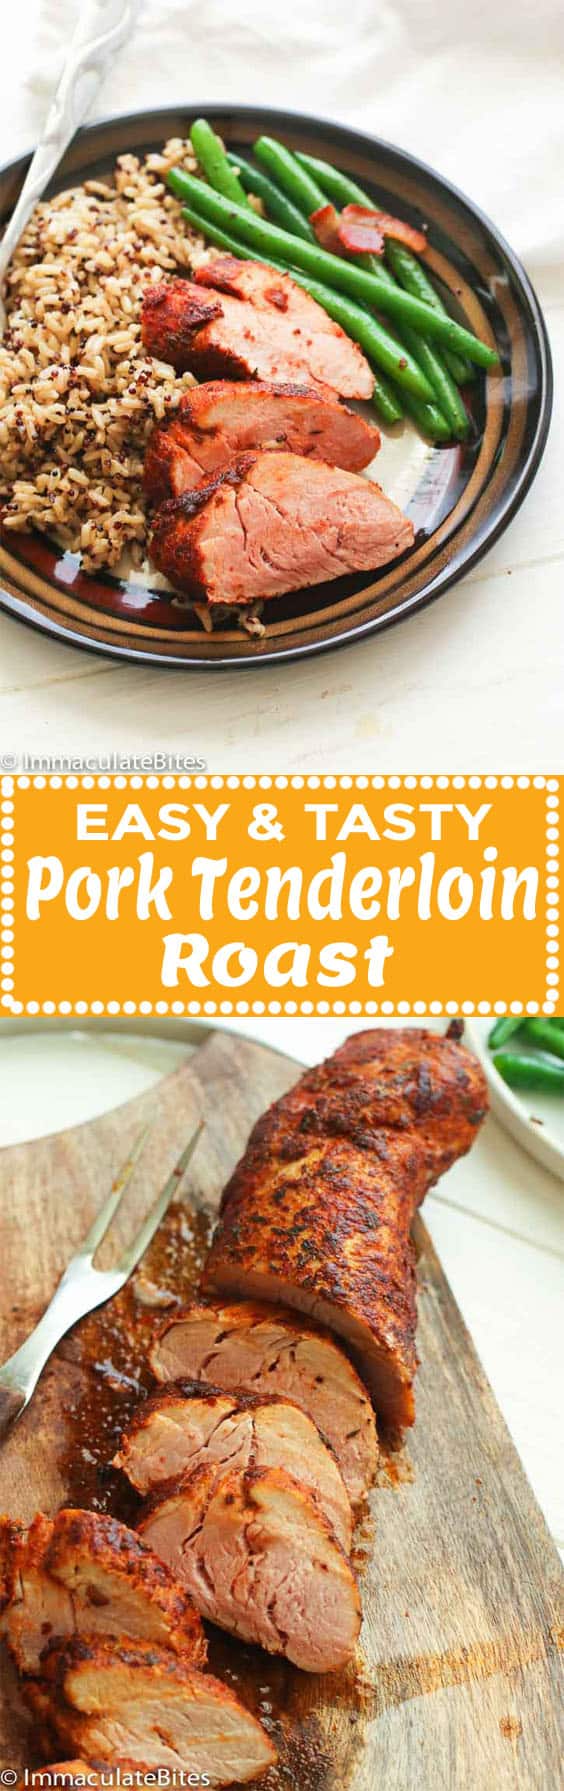 Pork Tenderloin Roast